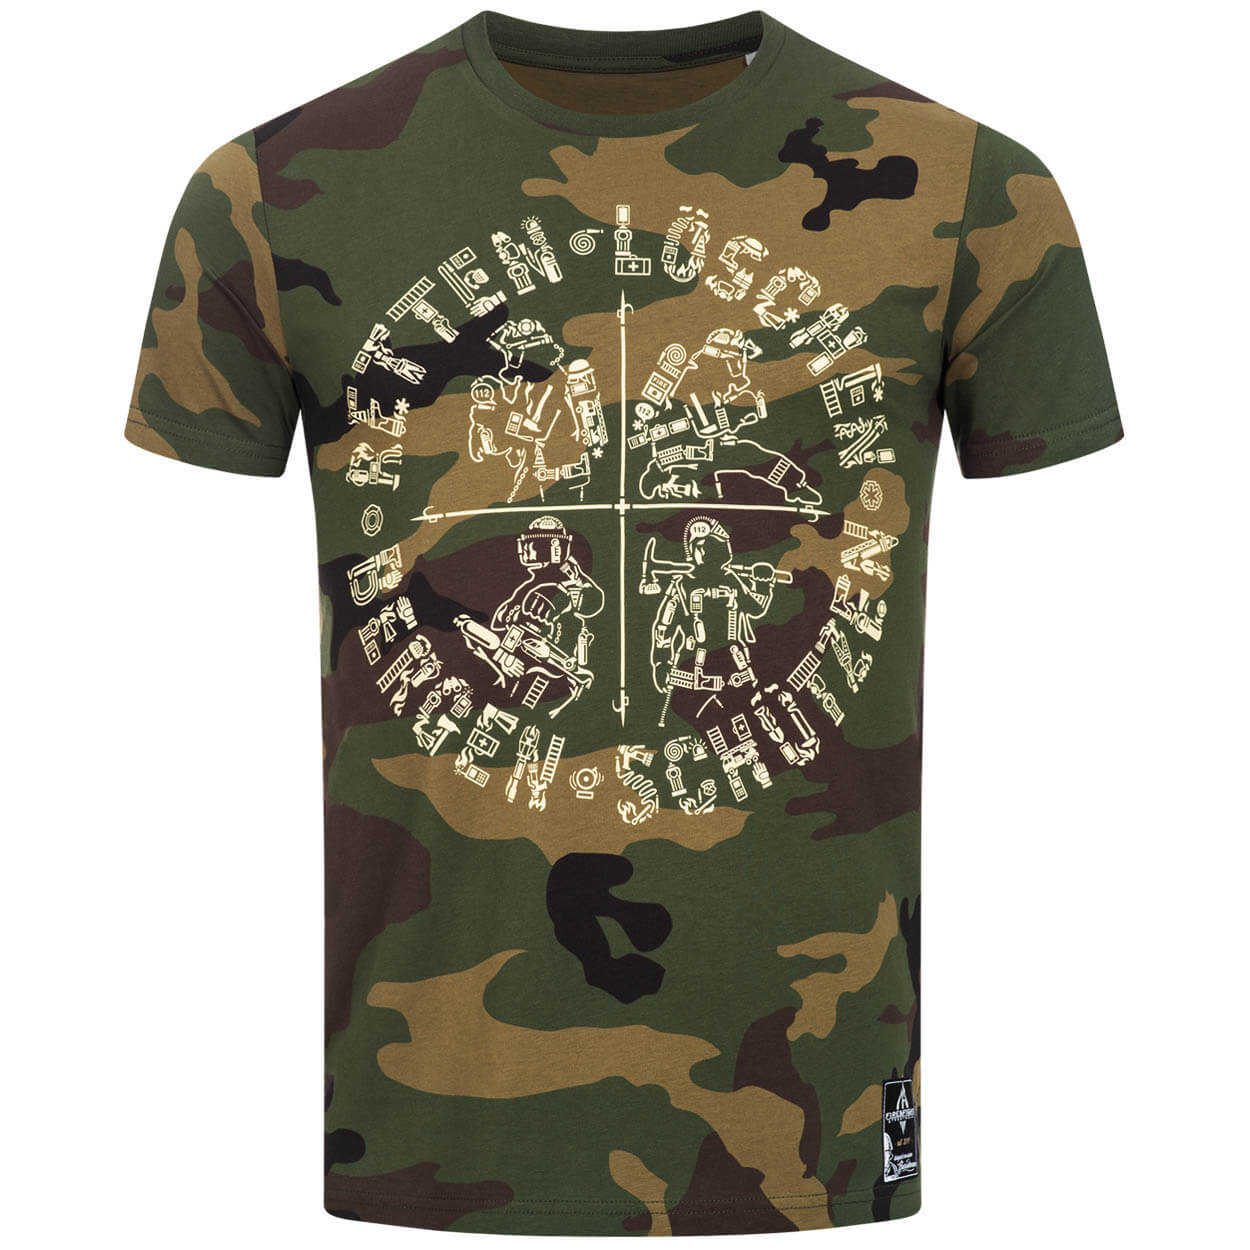 Retten Löschen Bergen Schützen - Männer T-Shirt Camouflage